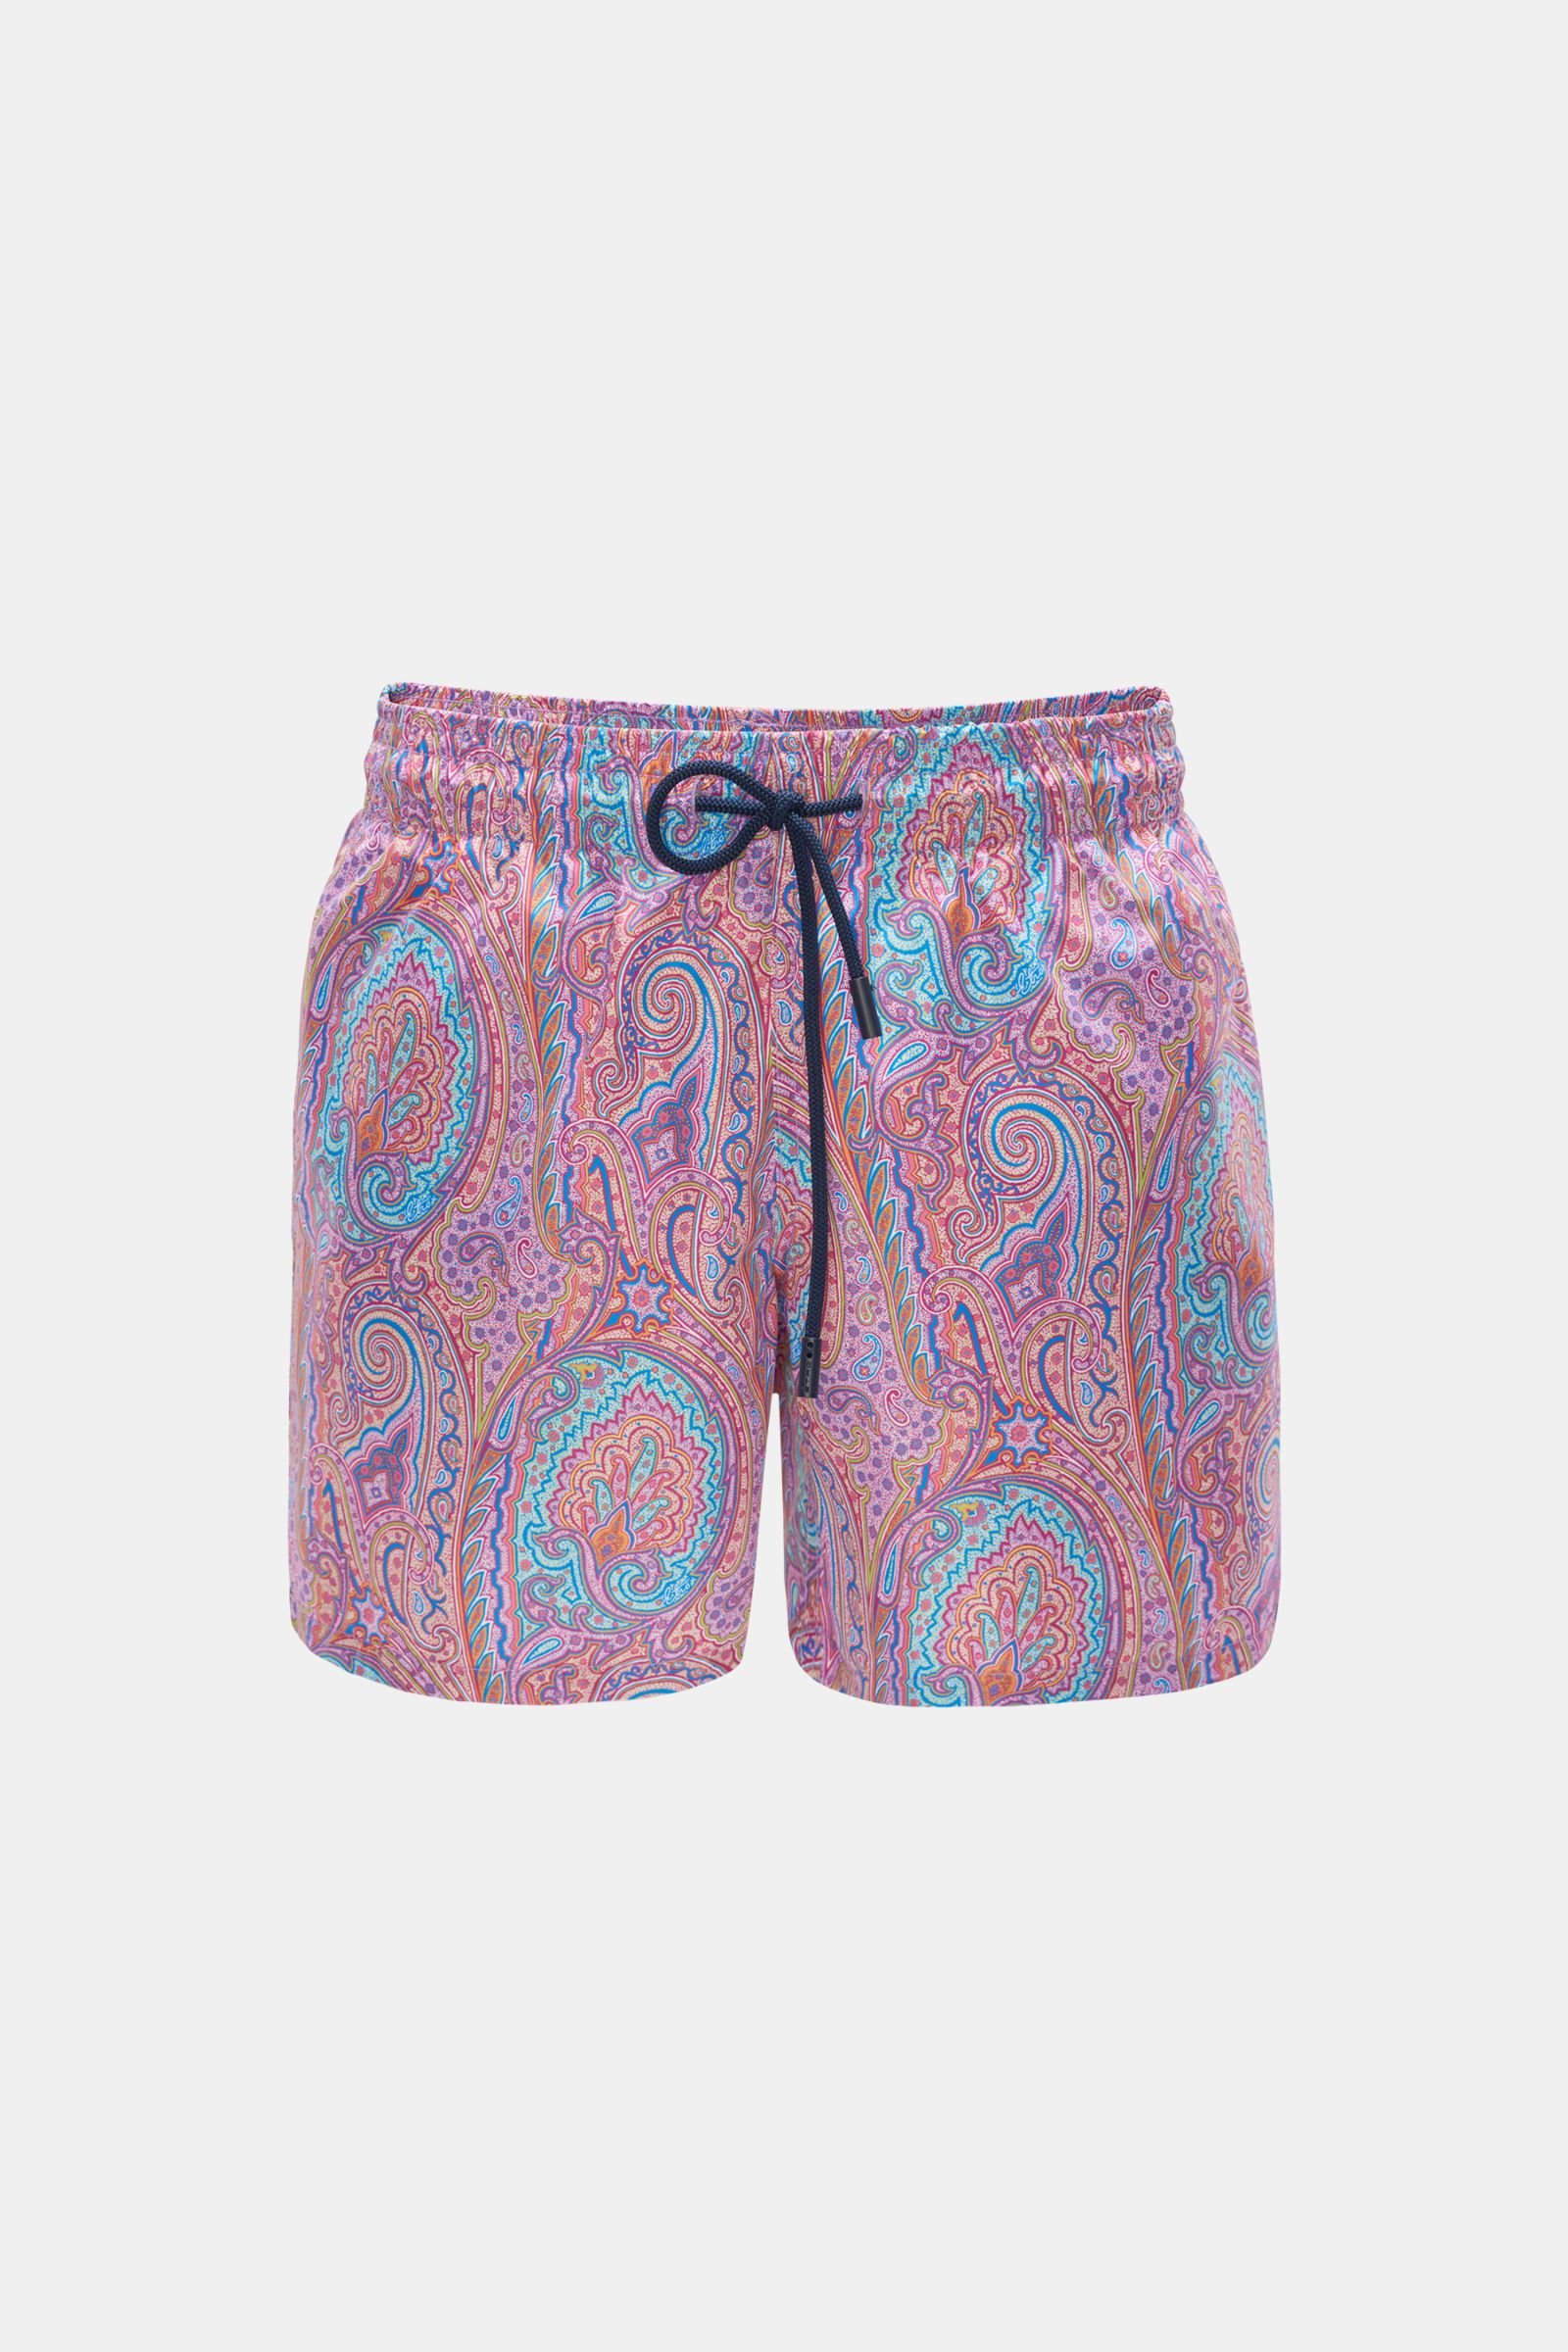 Swim shorts magenta/orange patterned